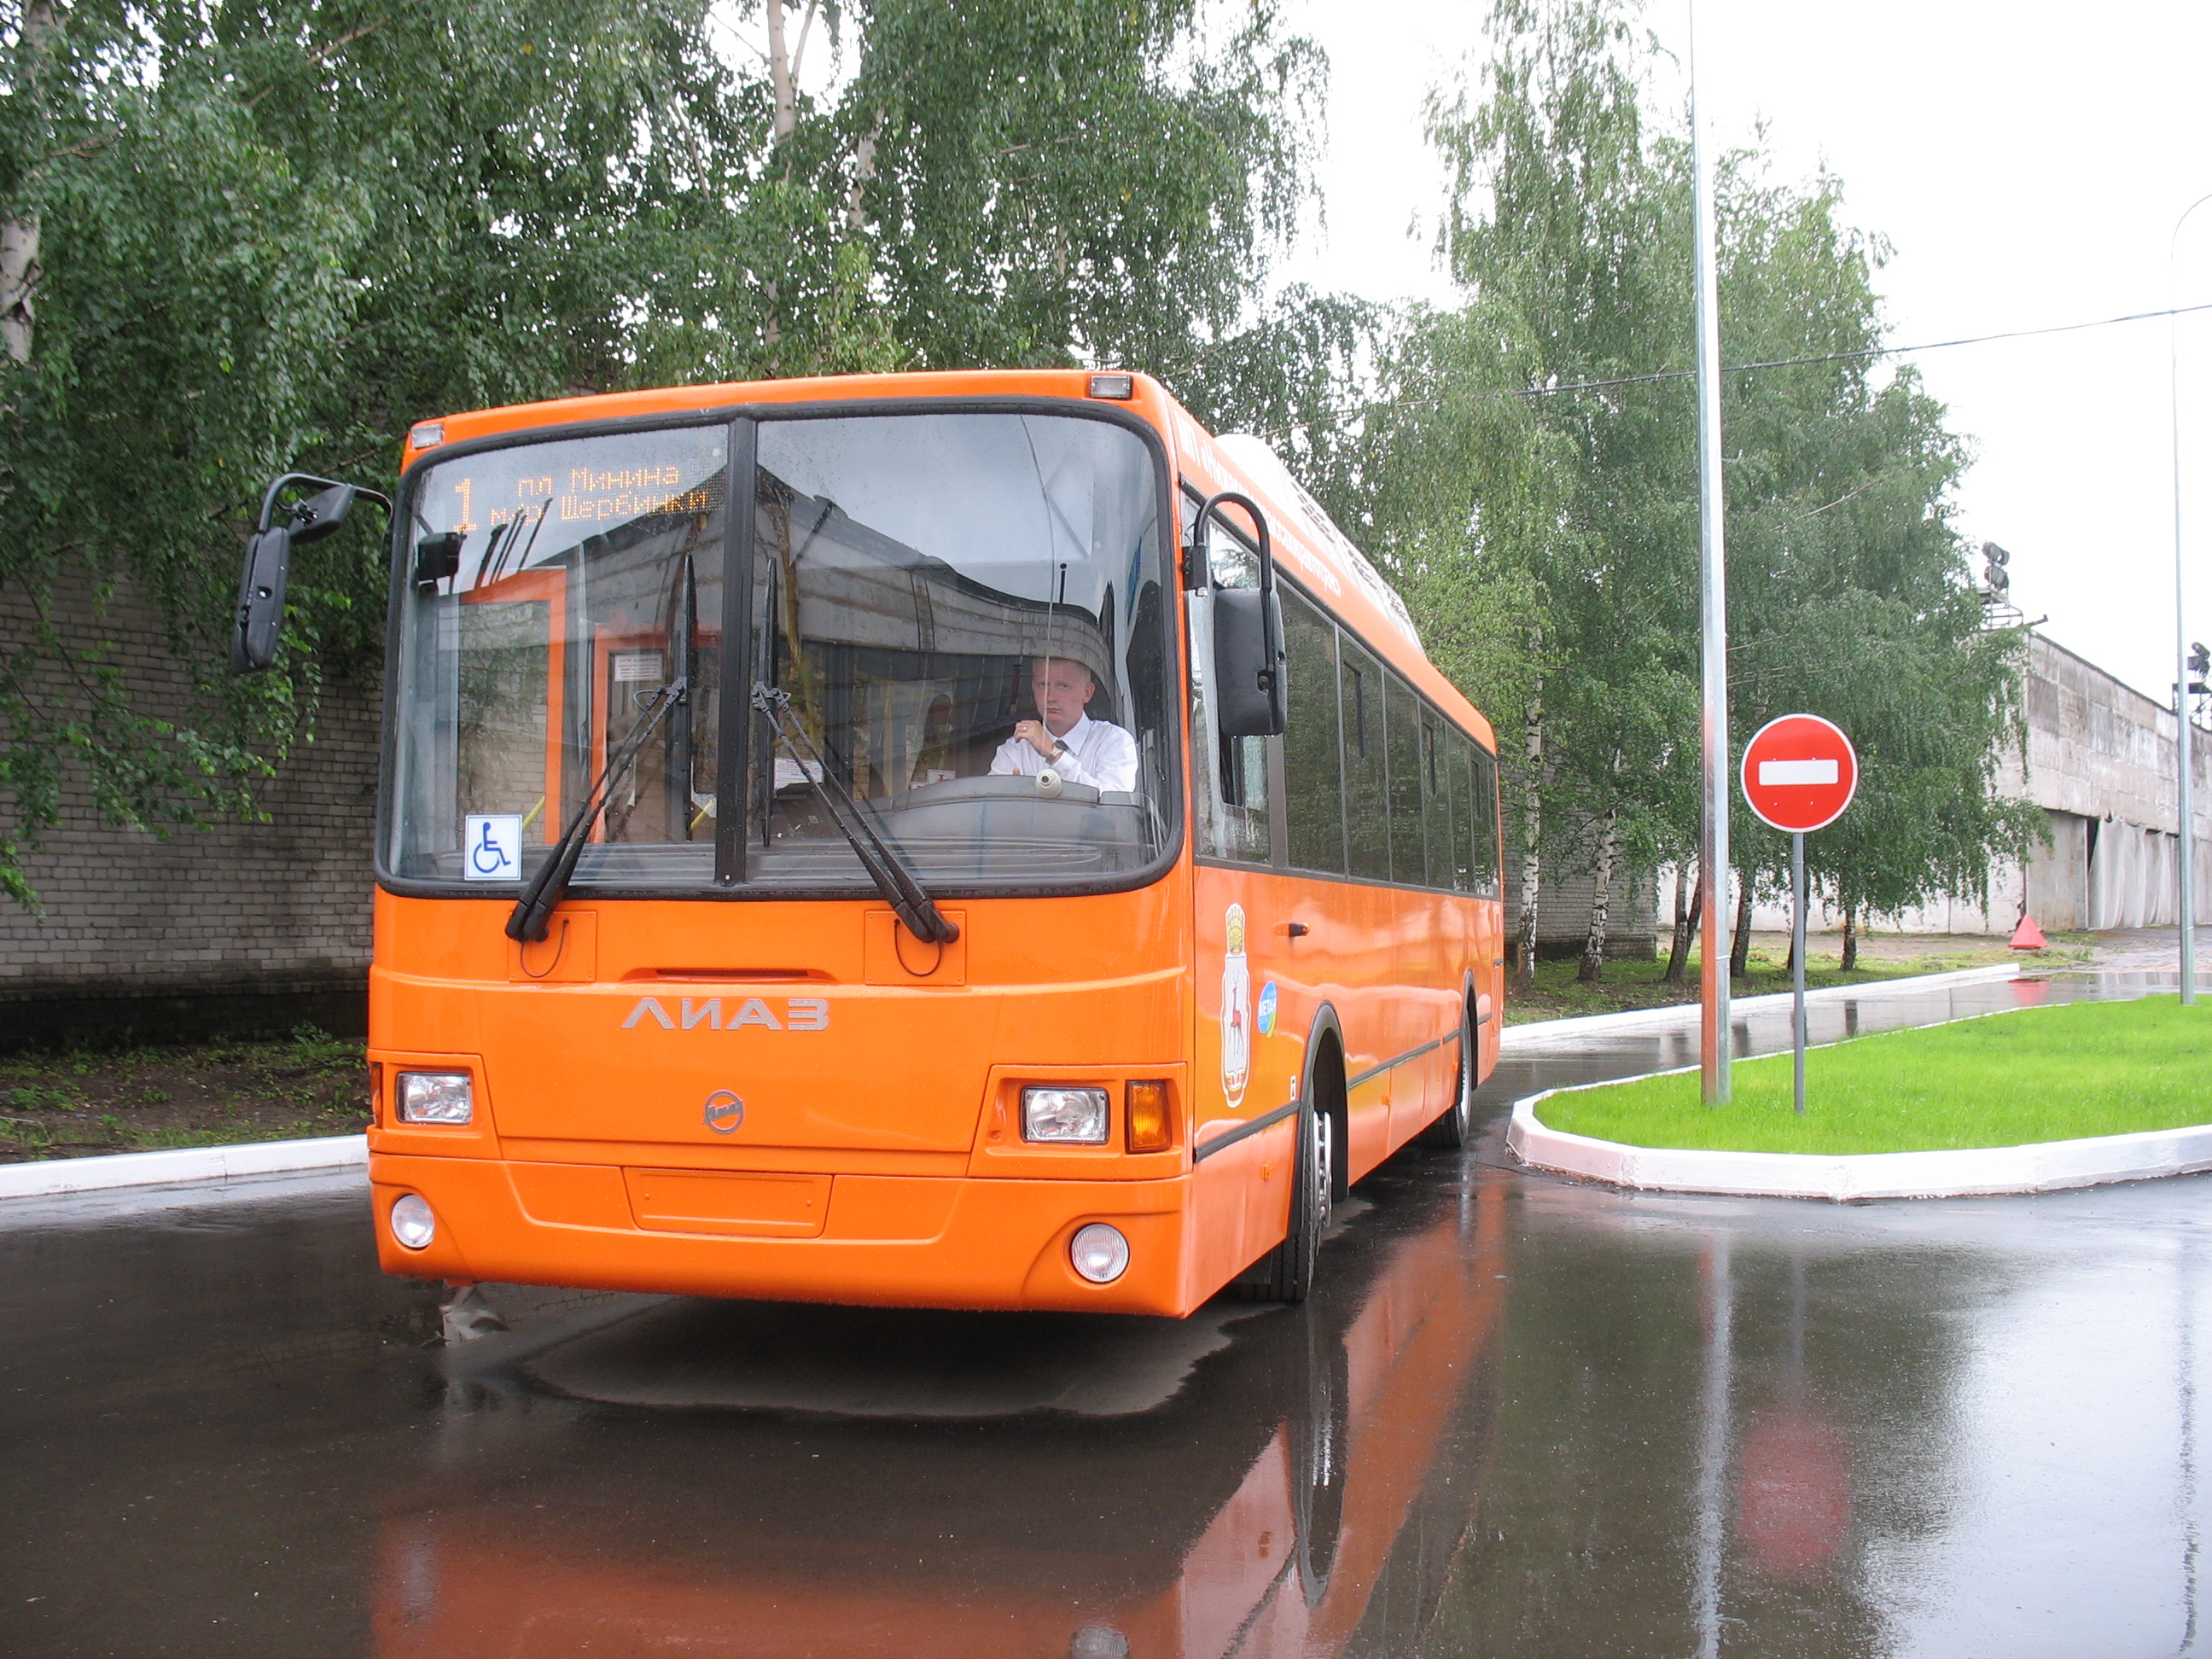 Пять автобусов изменят свои маршруты в Нижнем Новгороде до 3 октября  - фото 1